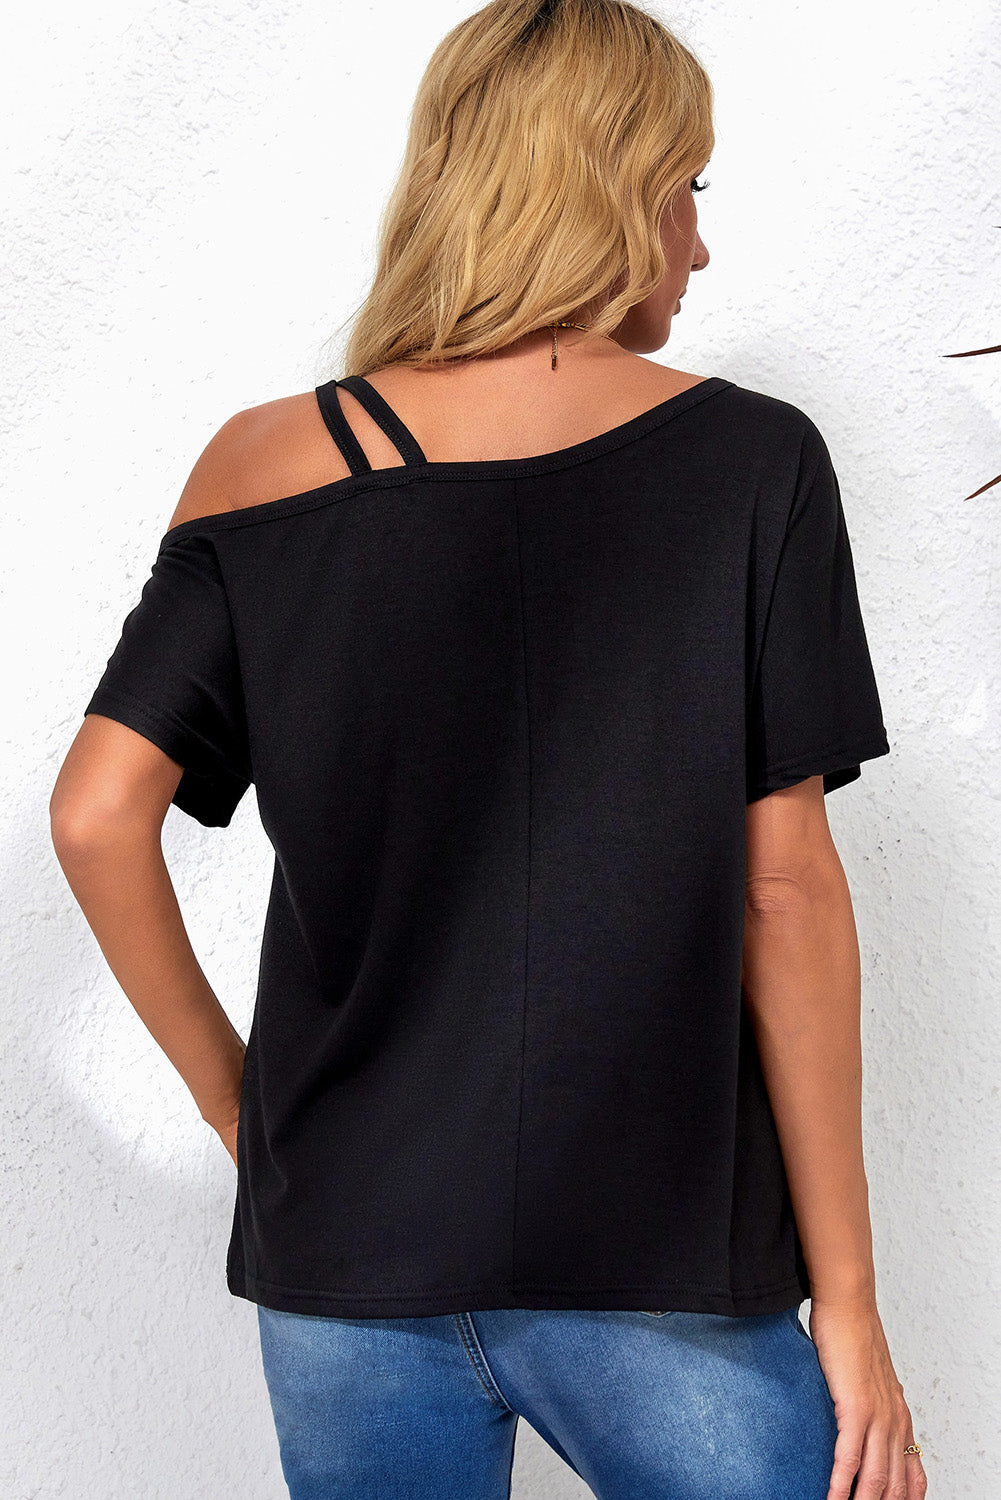 Schwarzes, asymmetrisches, überkreuztes One-Shoulder-T-Shirt